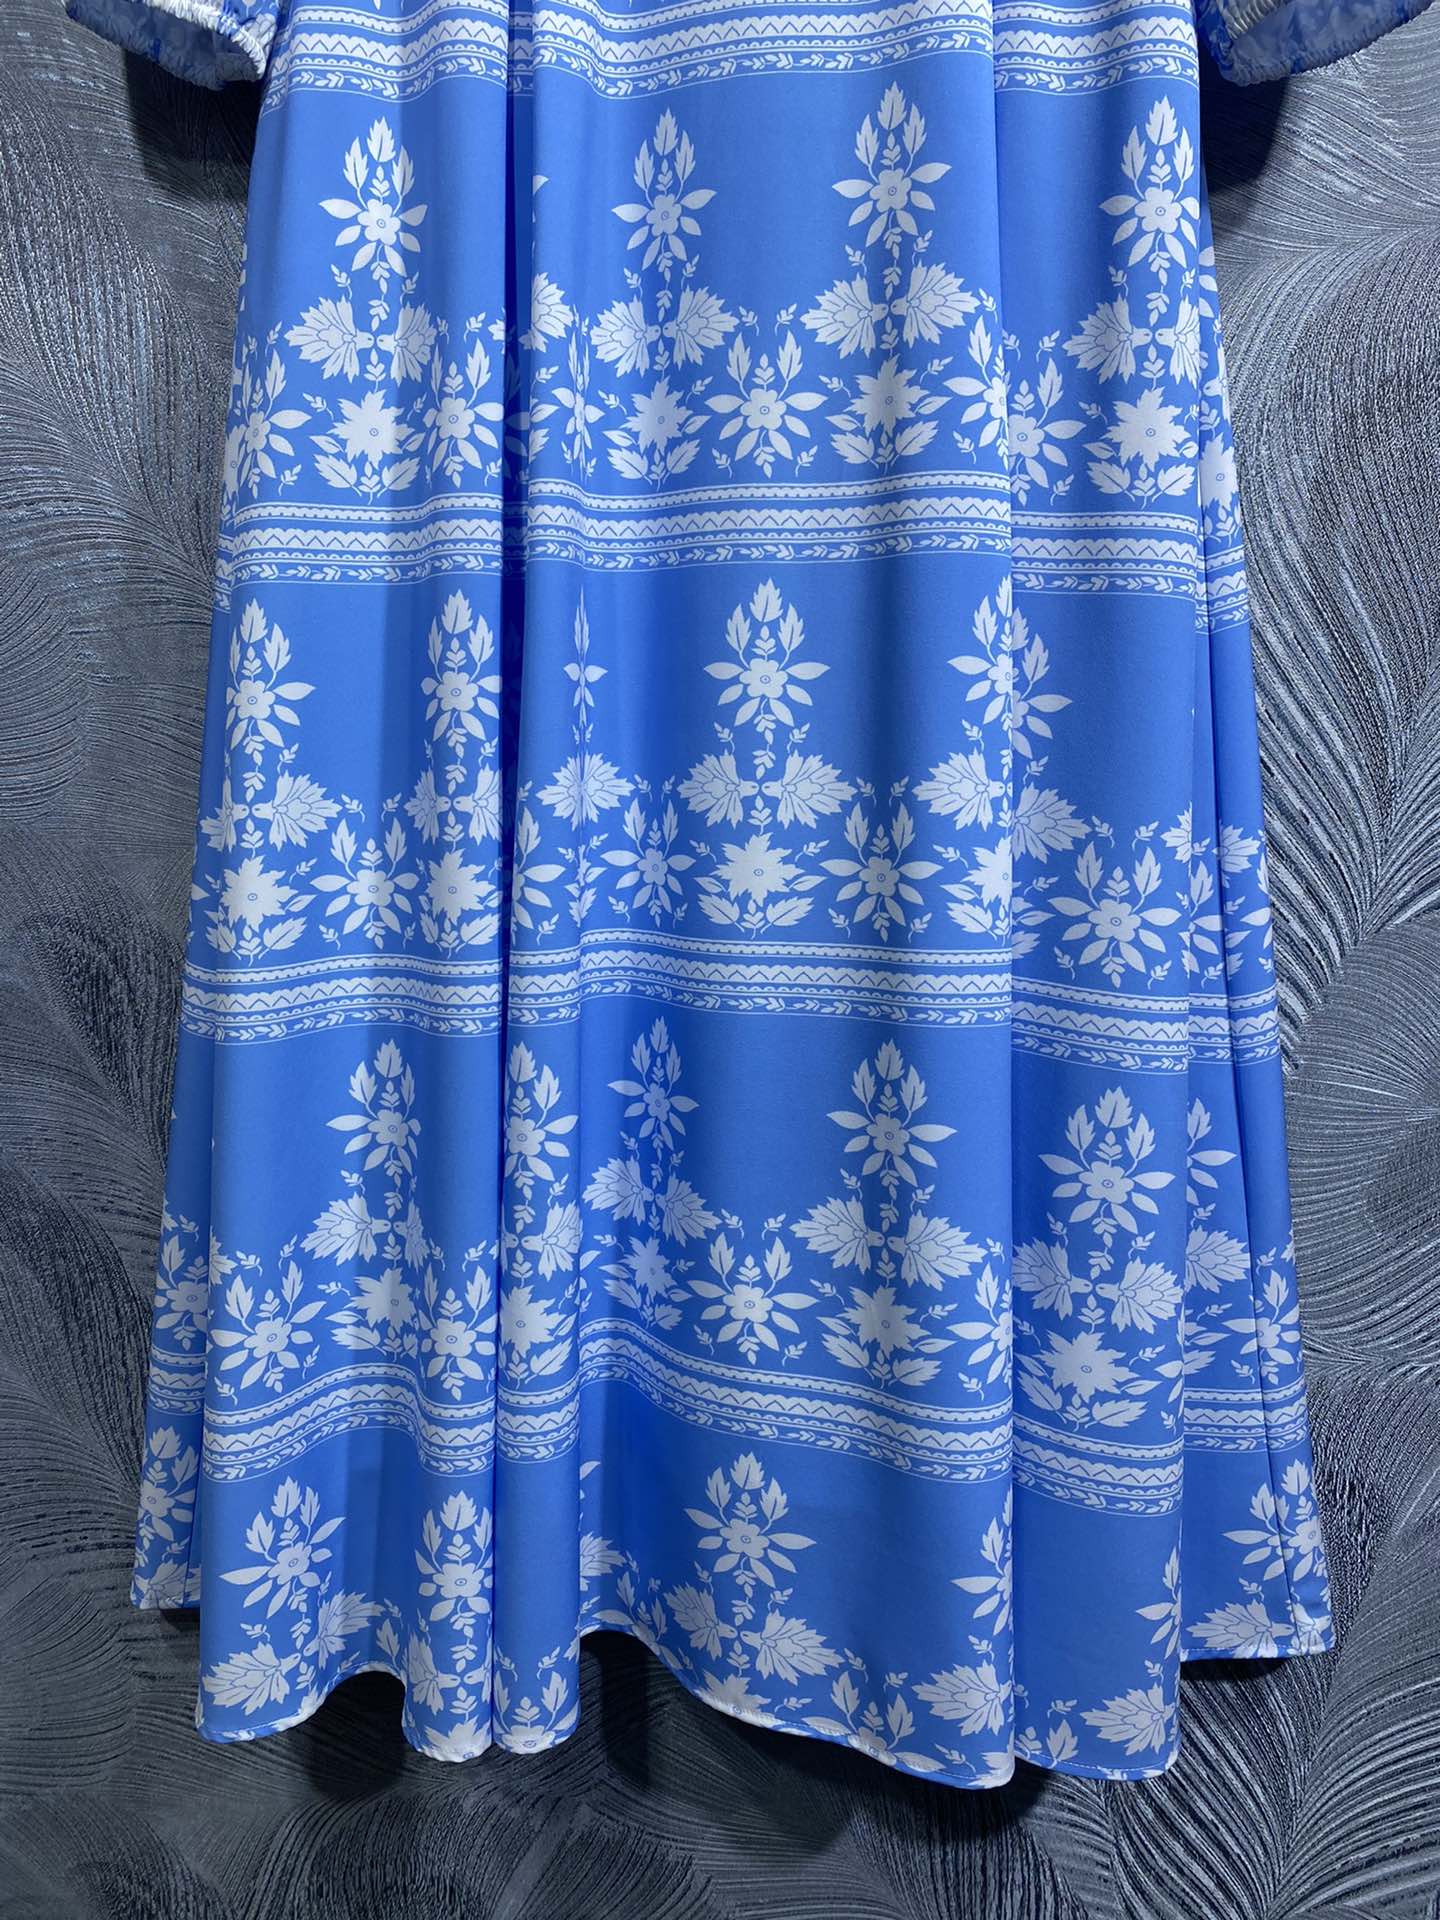 Robe du début de l'automne Nouveau designer Robe Style à manches longues Positionnement Robe imprimée élégante et atmosphérique Bleu rond Robe longue